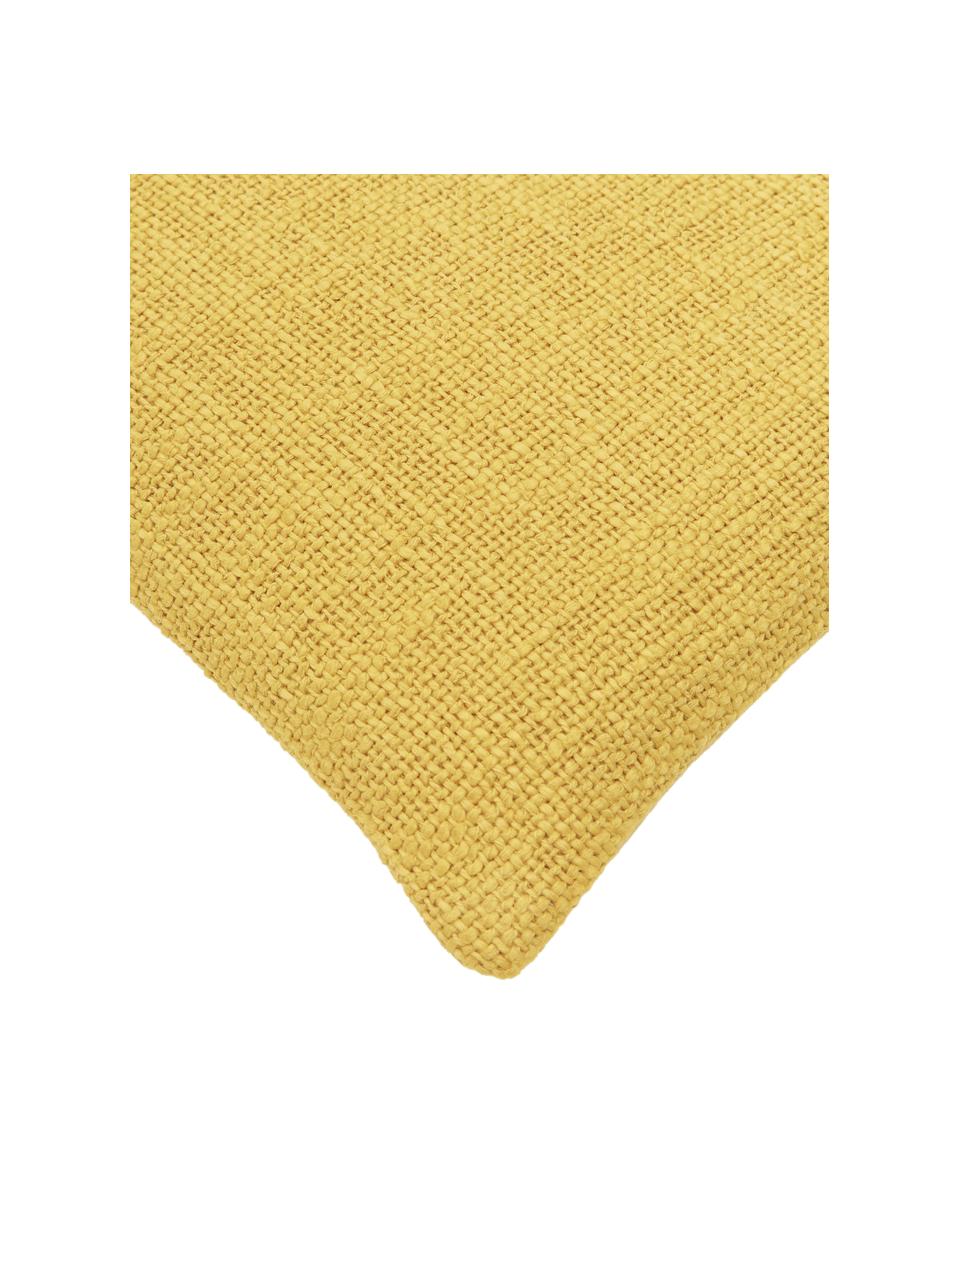 Housse de coussin jaune Penny, 100 % coton, Jaune, larg. 30 x long. 50 cm